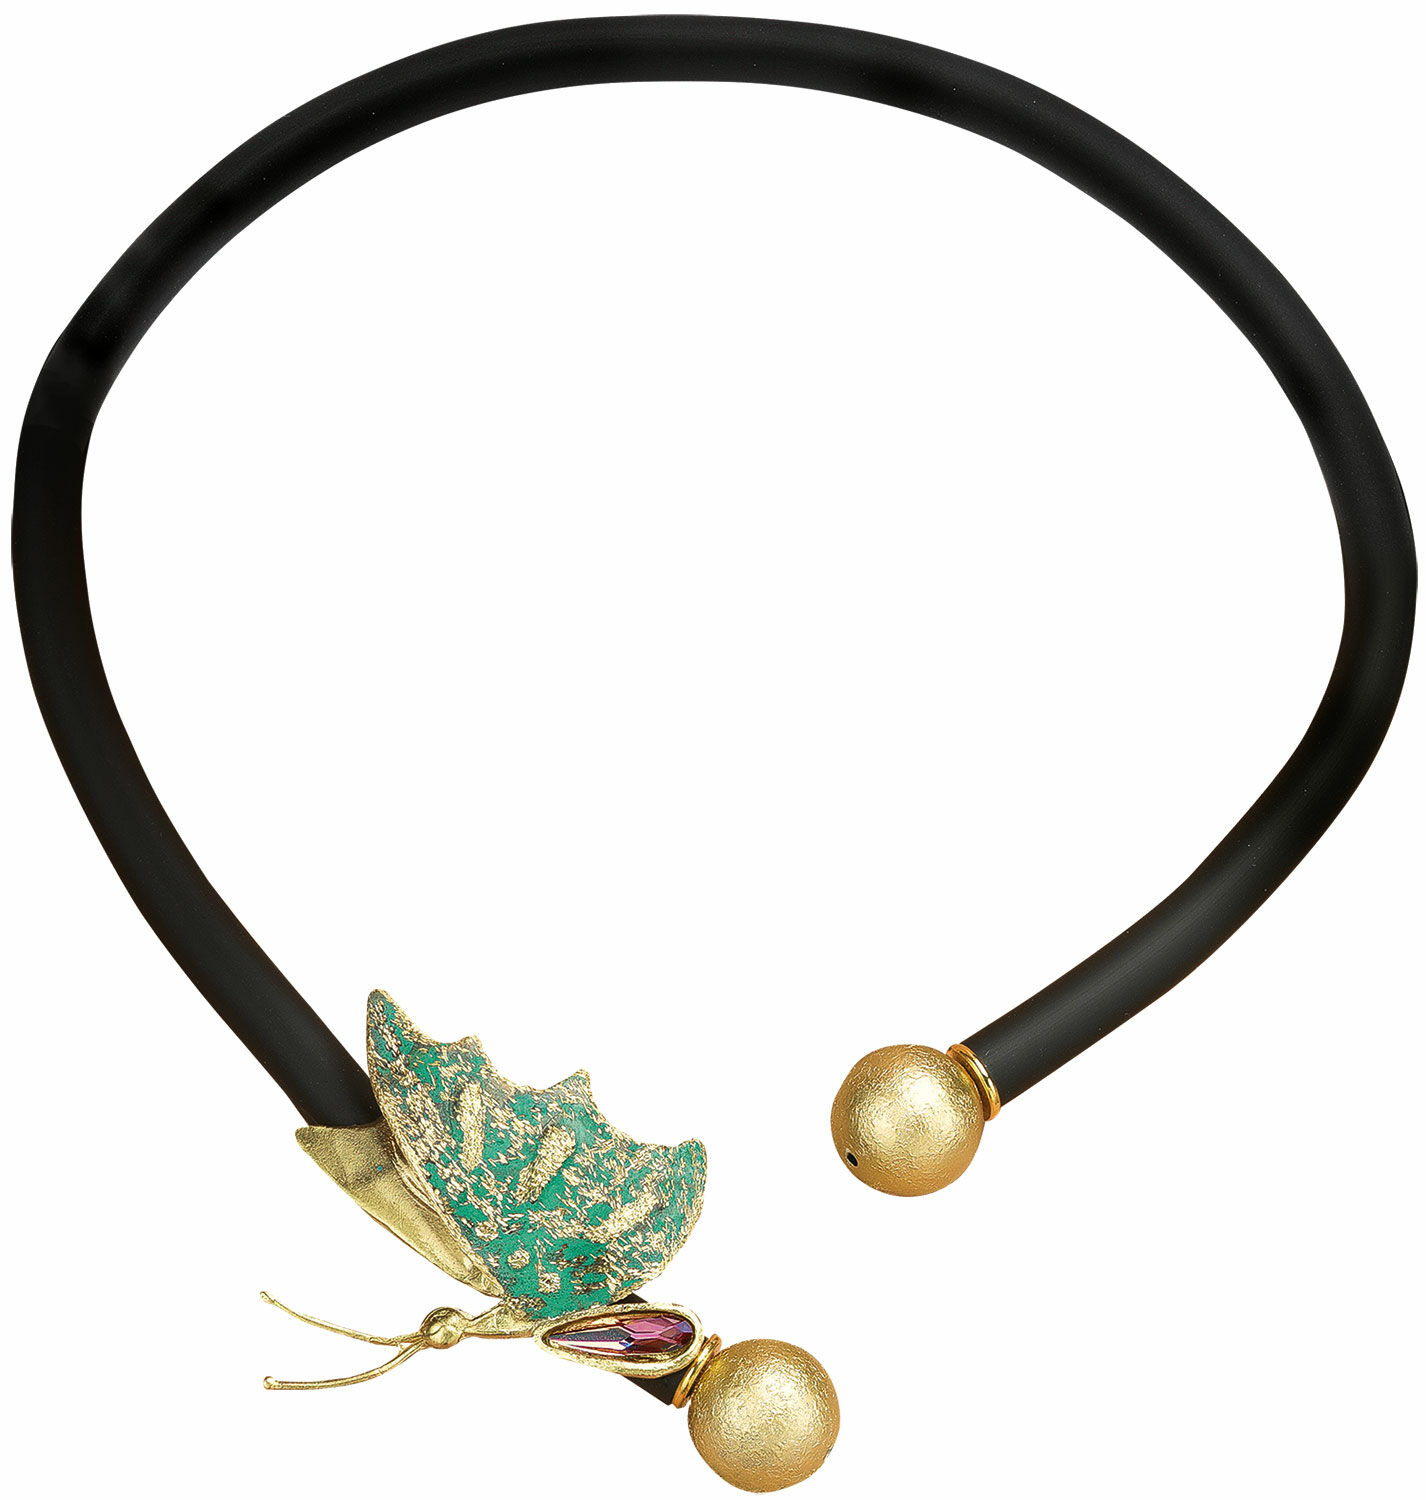 Necklace "Butterfly" by Anna Mütz